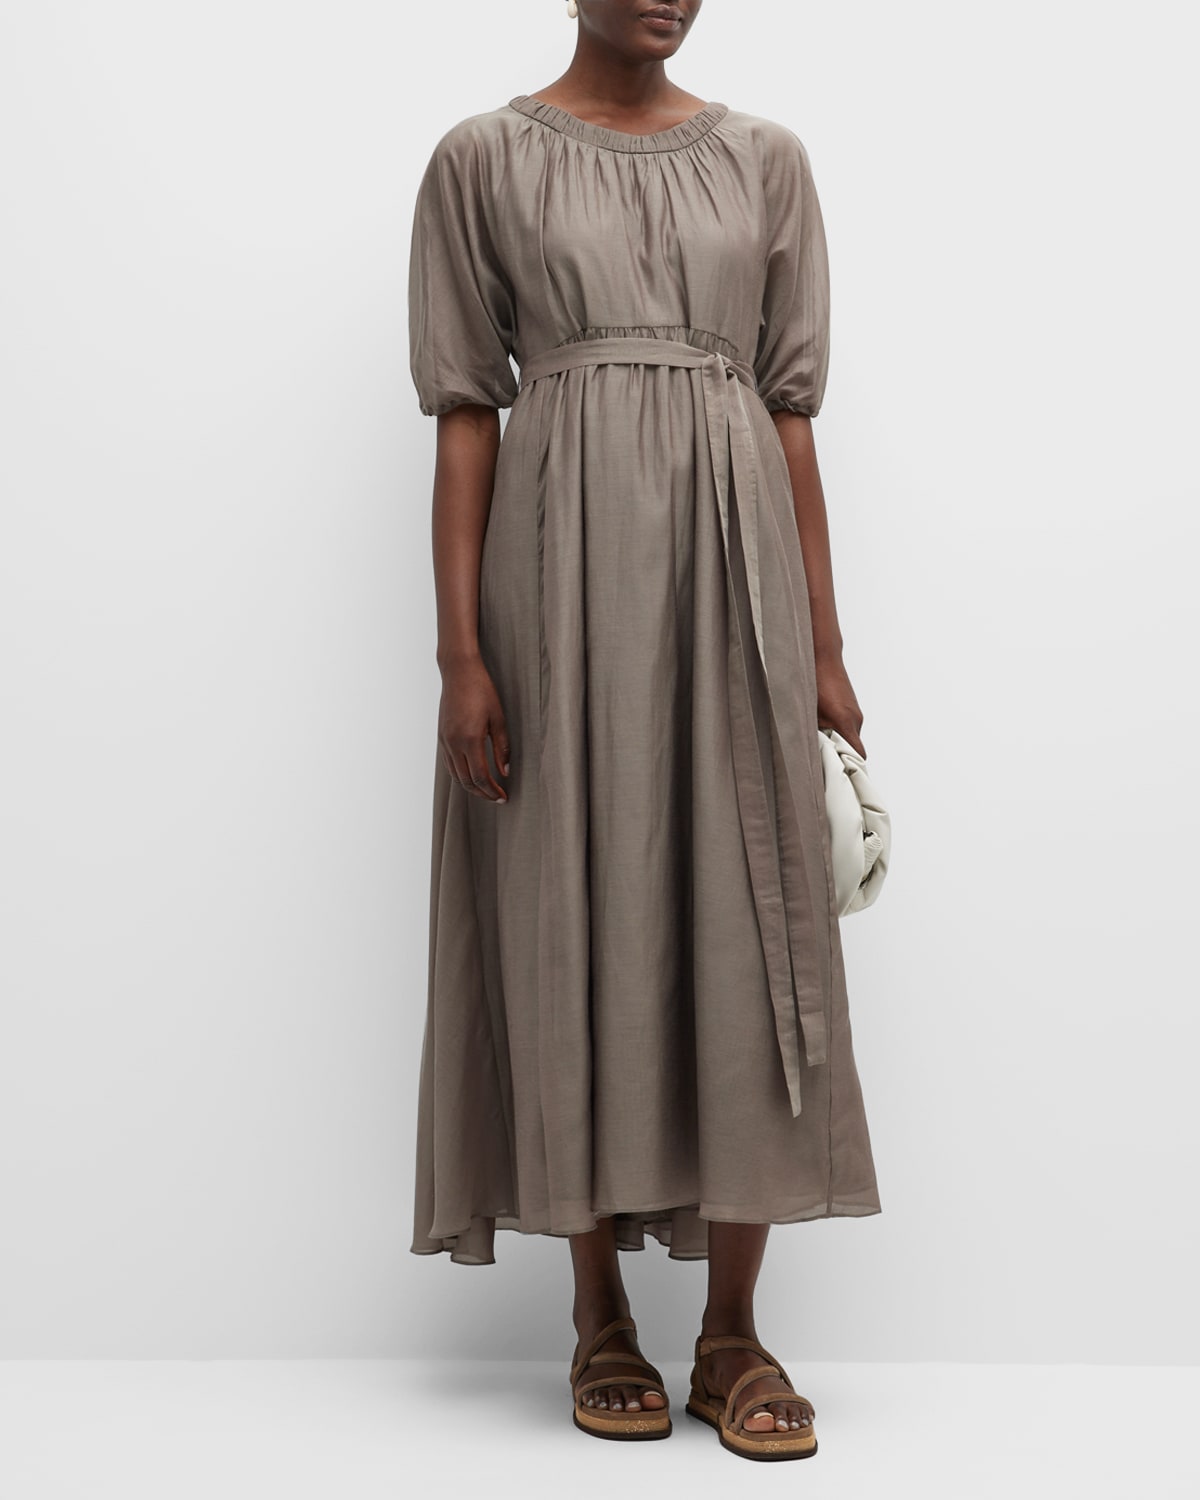 Fresia Self-Tie Cotton Dress